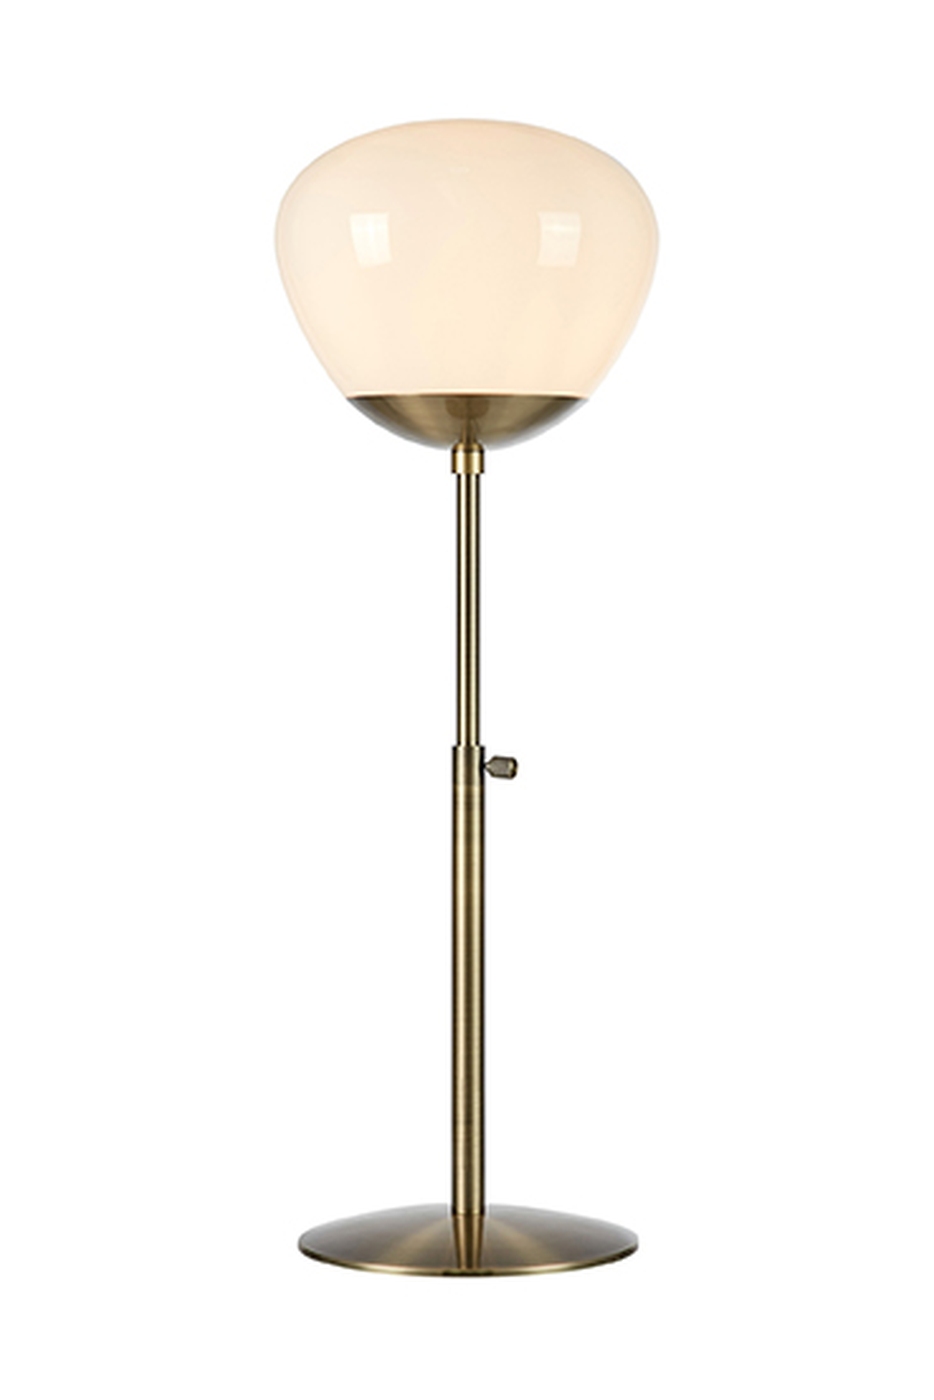 RISE Lampa stołowa E27 H 76cm patyna/biała Markslojd 108275